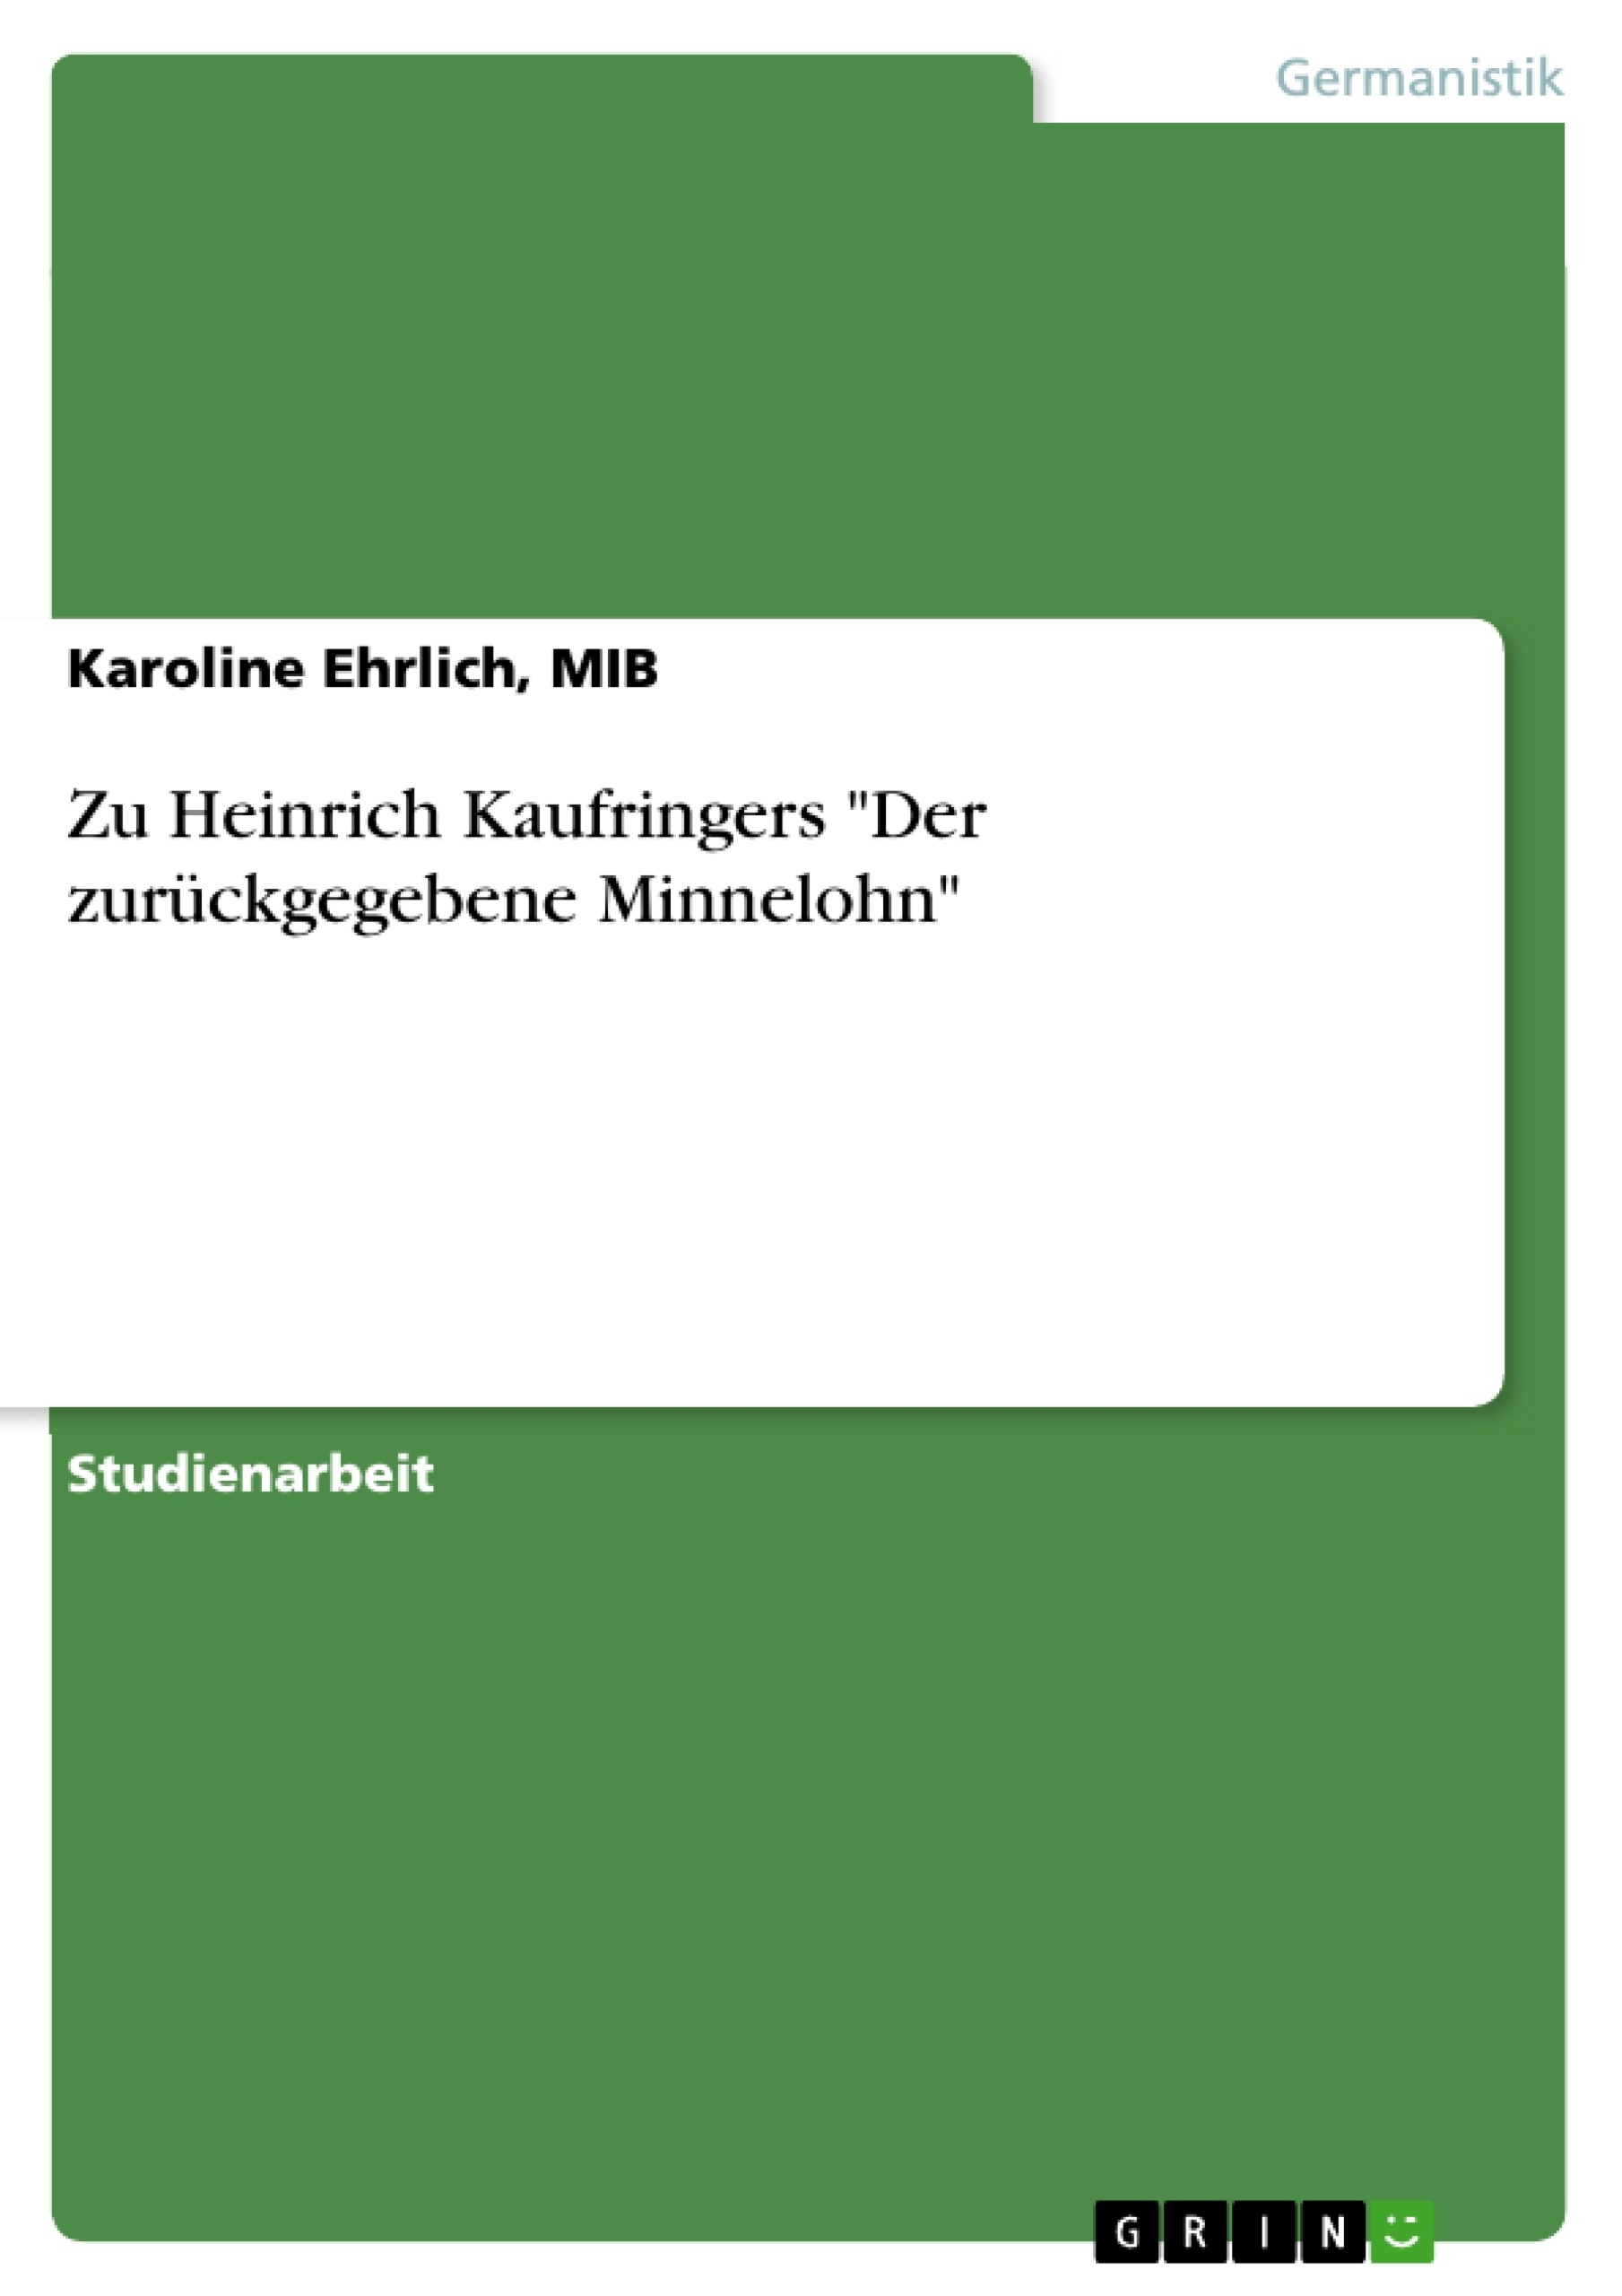 Título: Zu Heinrich Kaufringers "Der zurückgegebene Minnelohn"